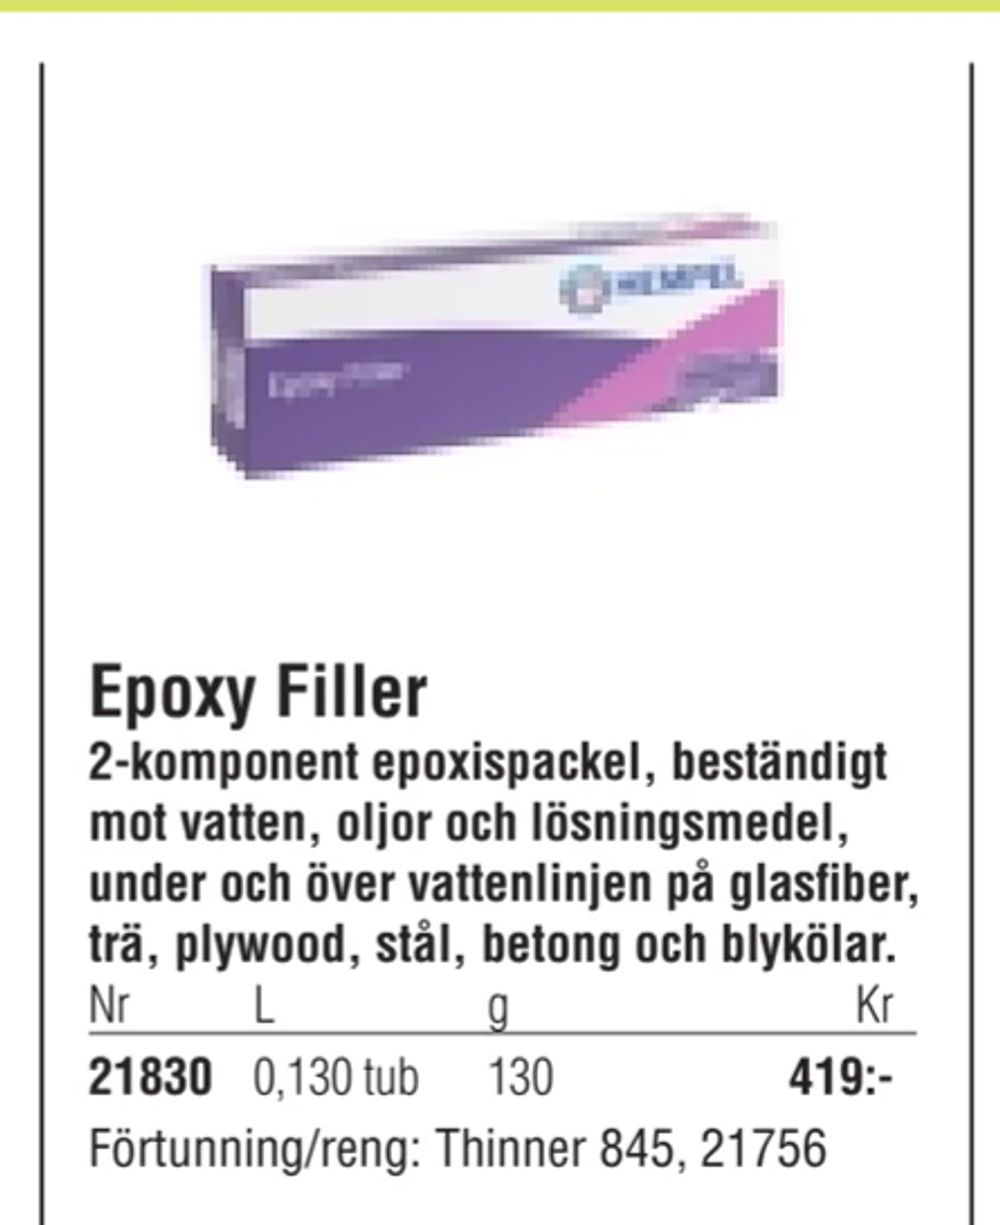 Erbjudanden på Epoxy Filler från Erlandsons Brygga för 419 kr